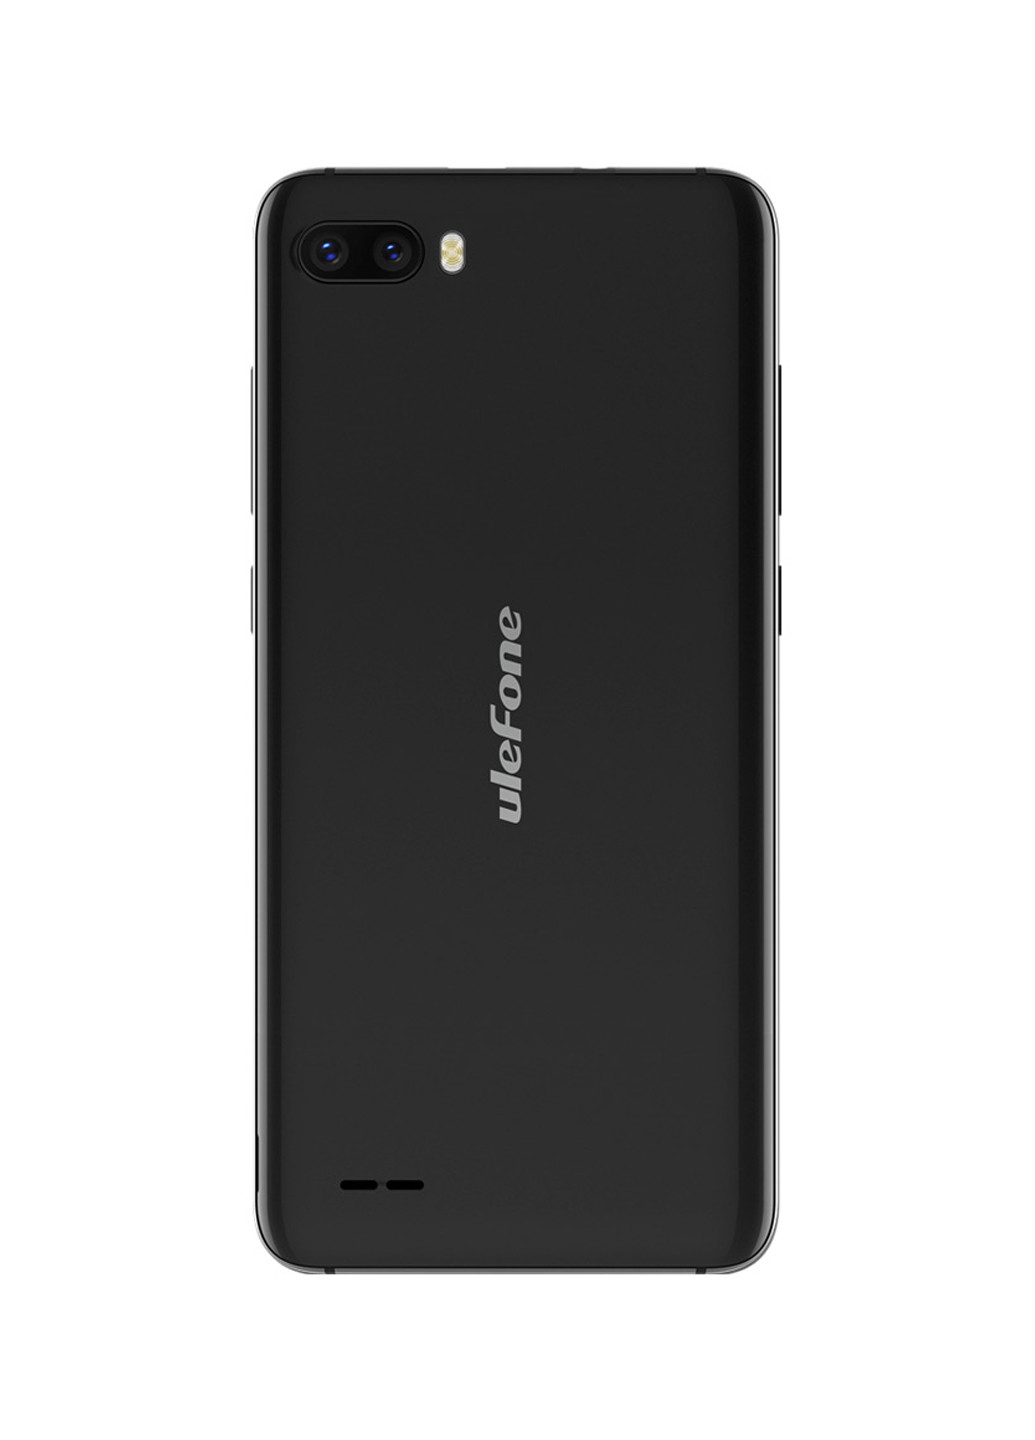 Смартфон Ulefone s1 1/8gb black (132885291)